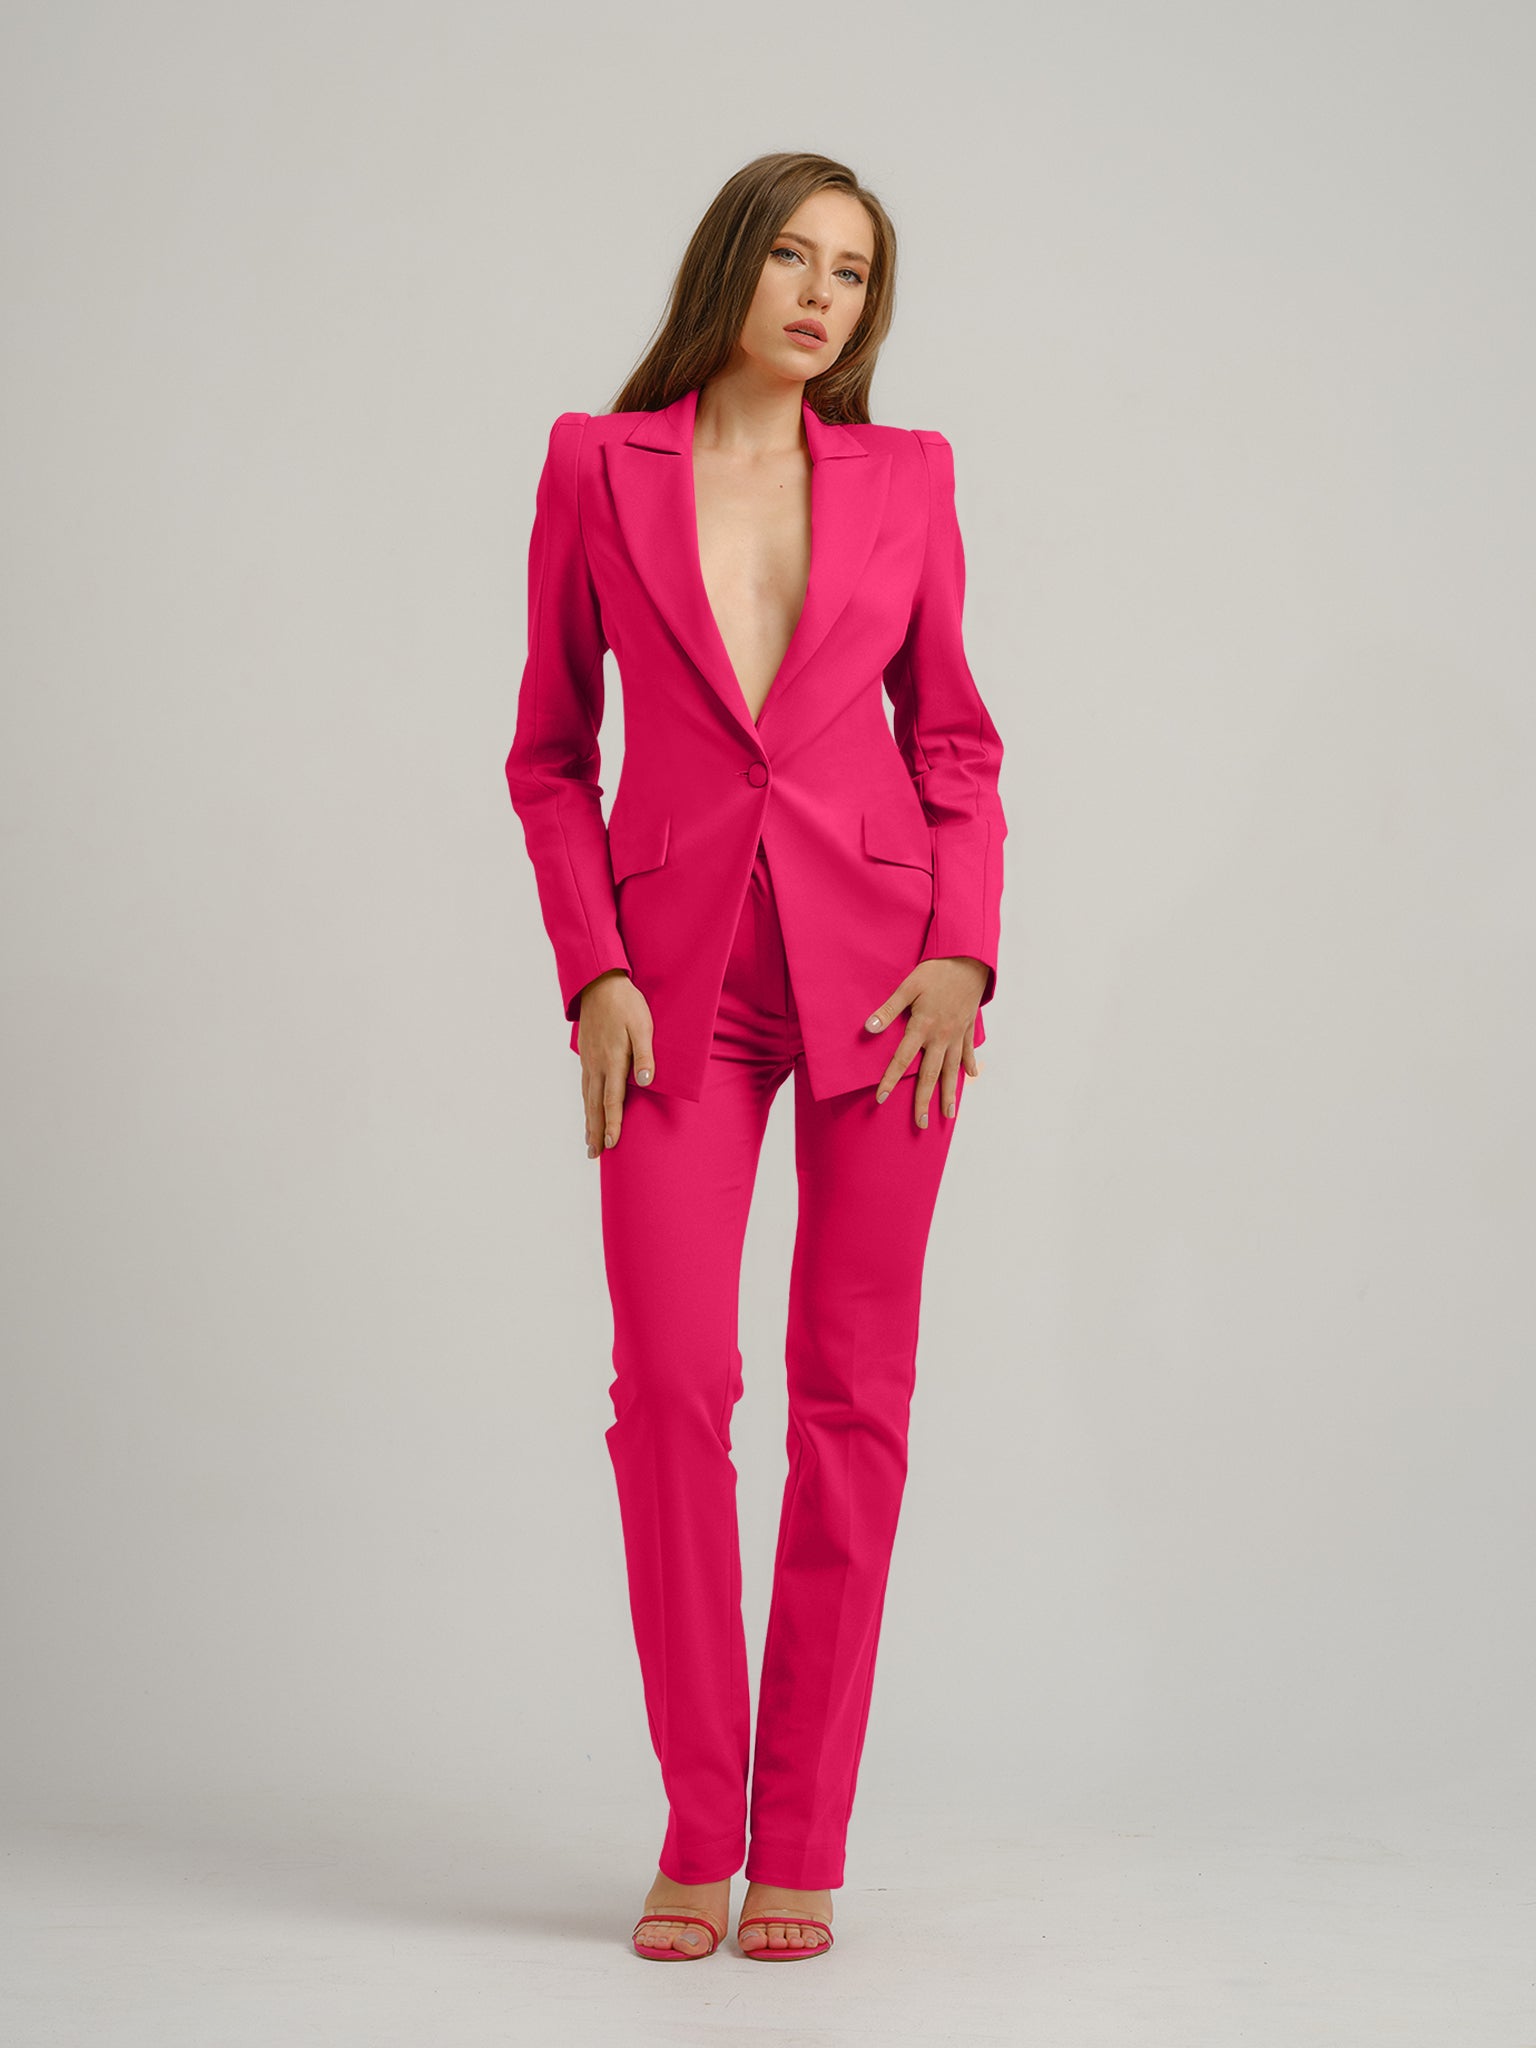 Fantasy Tailored Blazer - Pink by Tia Dorraine Women's Luxury Fashion Designer Clothing Brand